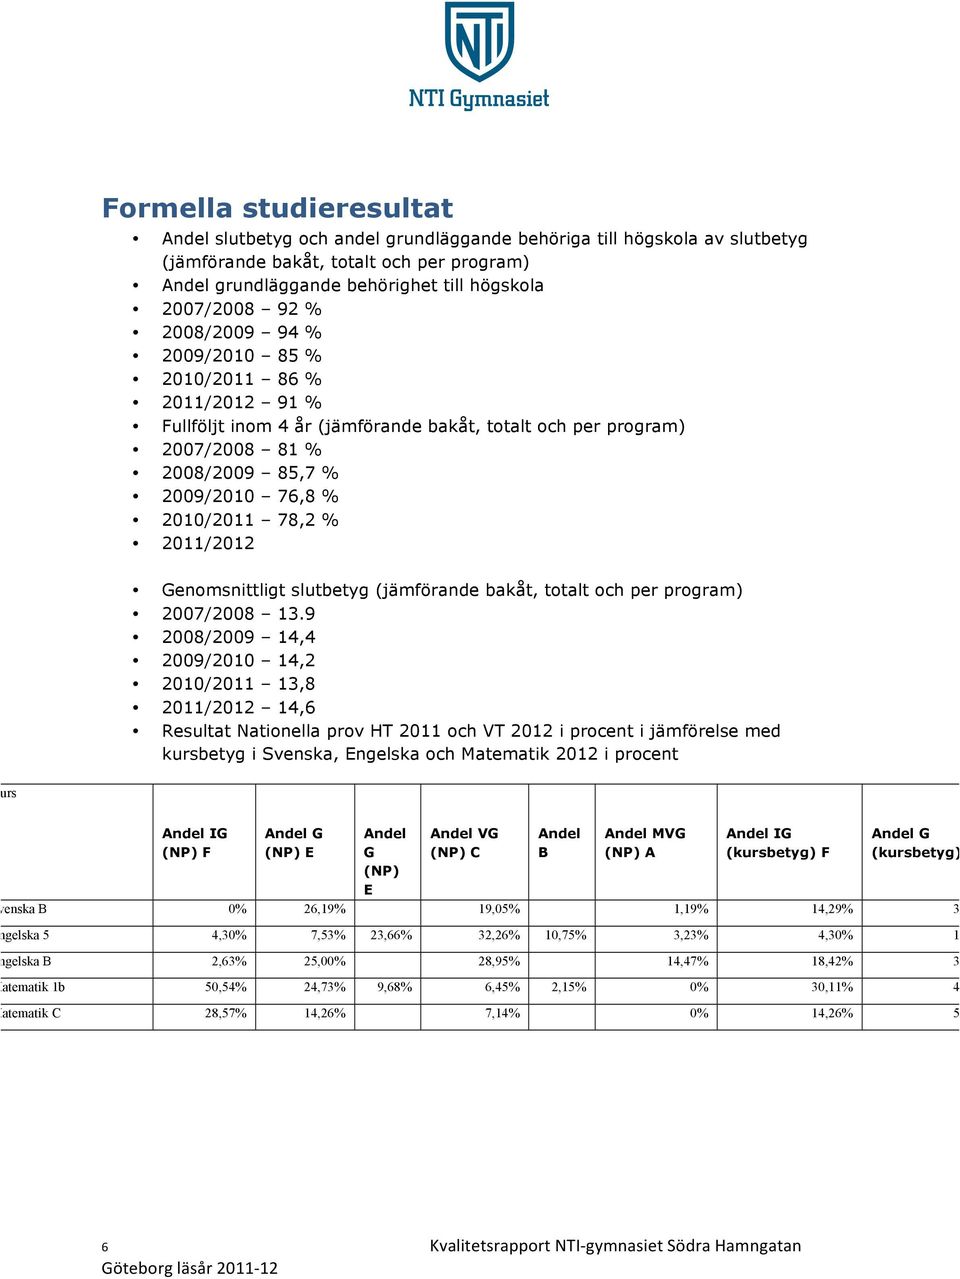 2011/2012 Genomsnittligt slutbetyg (jämförande bakåt, totalt och per program) 2007/2008 13.